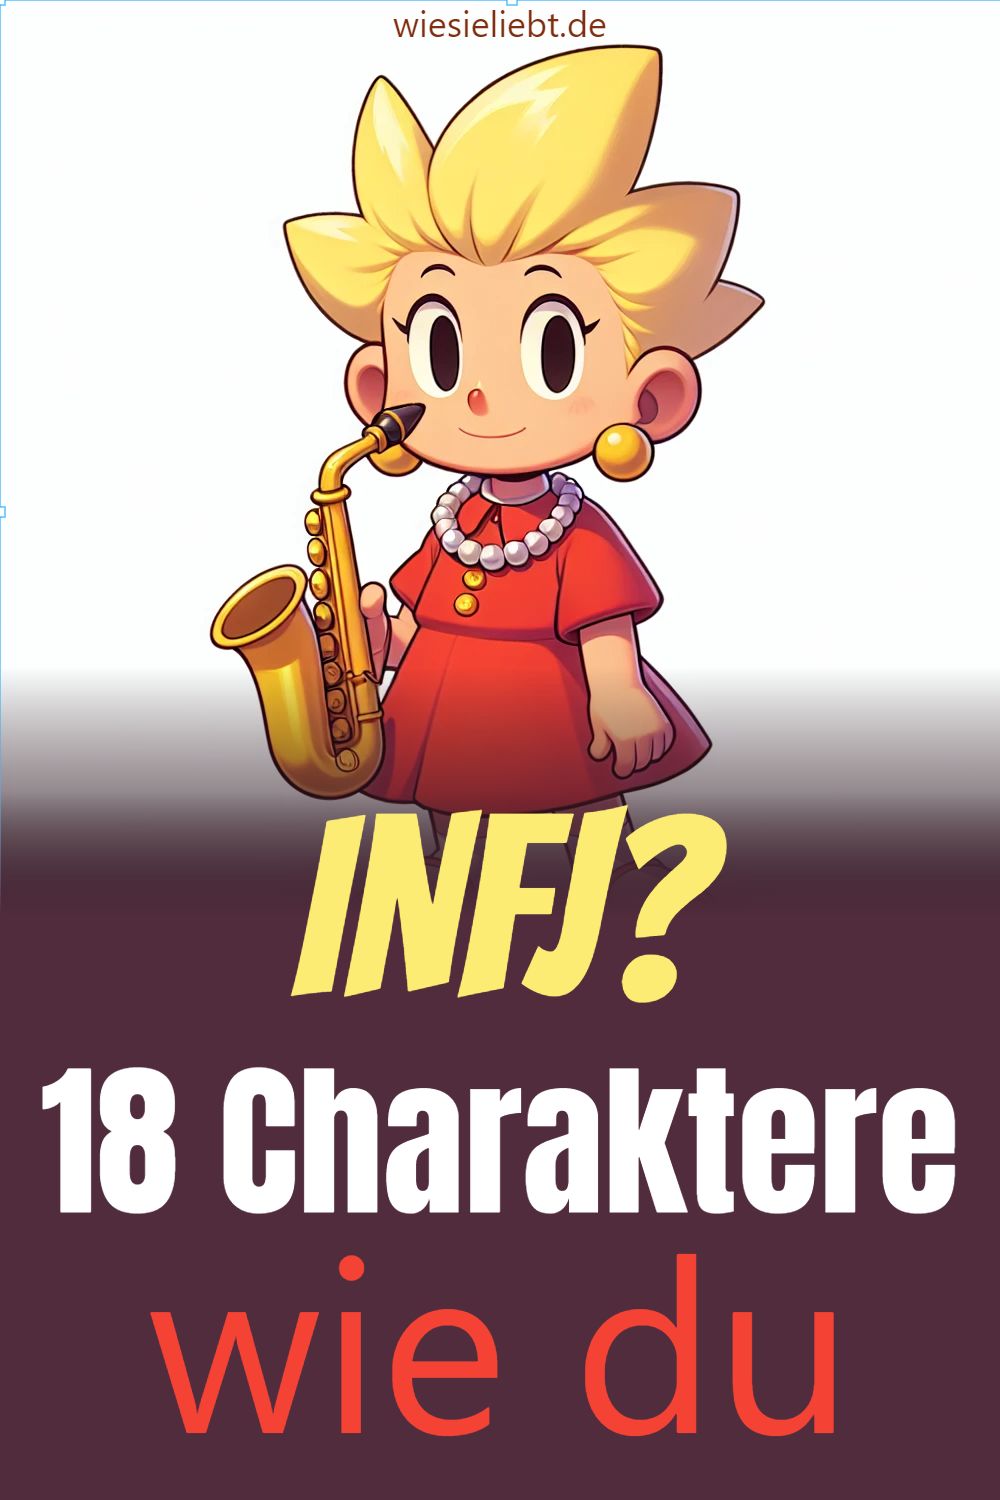 INFJ? 18 Charaktere wie du